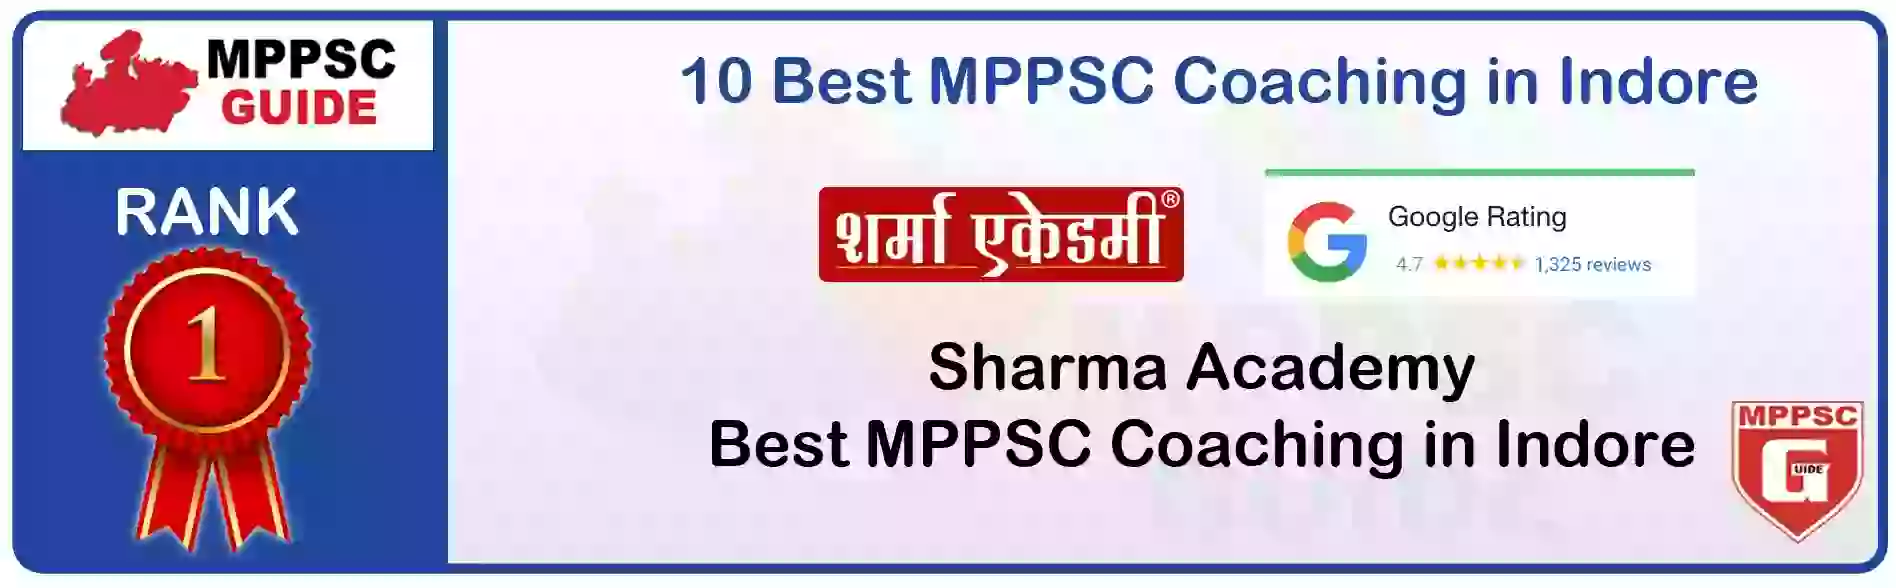 MPPSC Coaching in Kundeshwar, MPPSC Coaching Institute In Kundeshwar, Best MPPSC Coaching in Kundeshwar, Top 10 MPPSC Coaching In Kundeshwar, best mppsc coaching institute in Kundeshwar, MPPSC Coaching Classes In Kundeshwar, MPPSC Online Coaching In Kundeshwar, mppsc coaching in Kundeshwar bhanwarkua